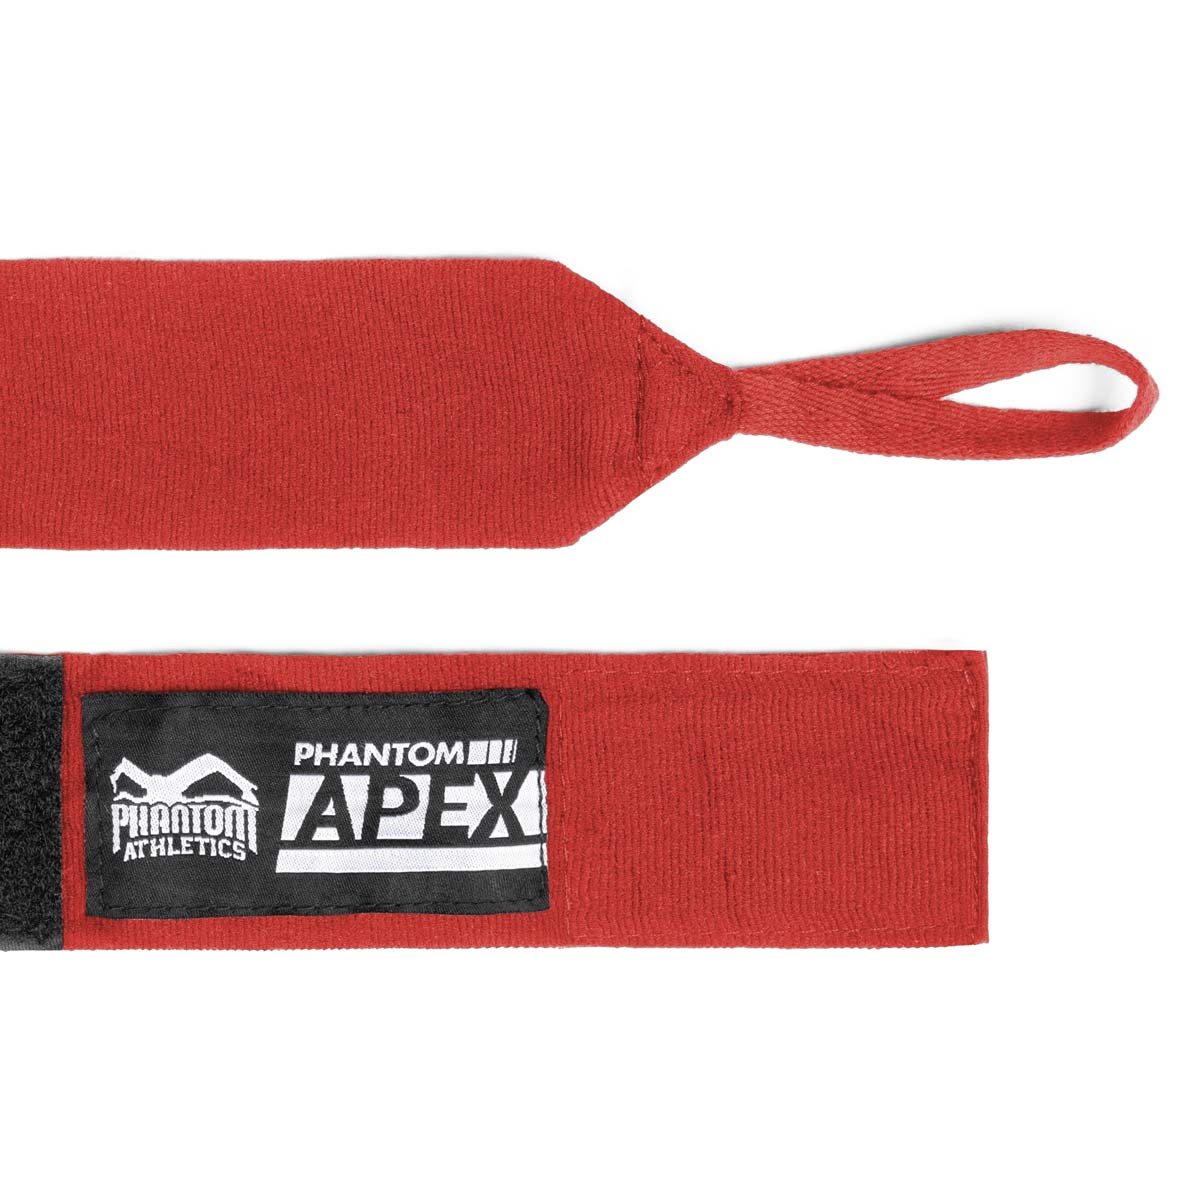 Phantom Boxbandagen für Kampfsport Training und Wettkampf. In der Farbe rot und in 2 verschiedenen Längen. Halbelastisch für maximalen Halt und Tragekomfort.